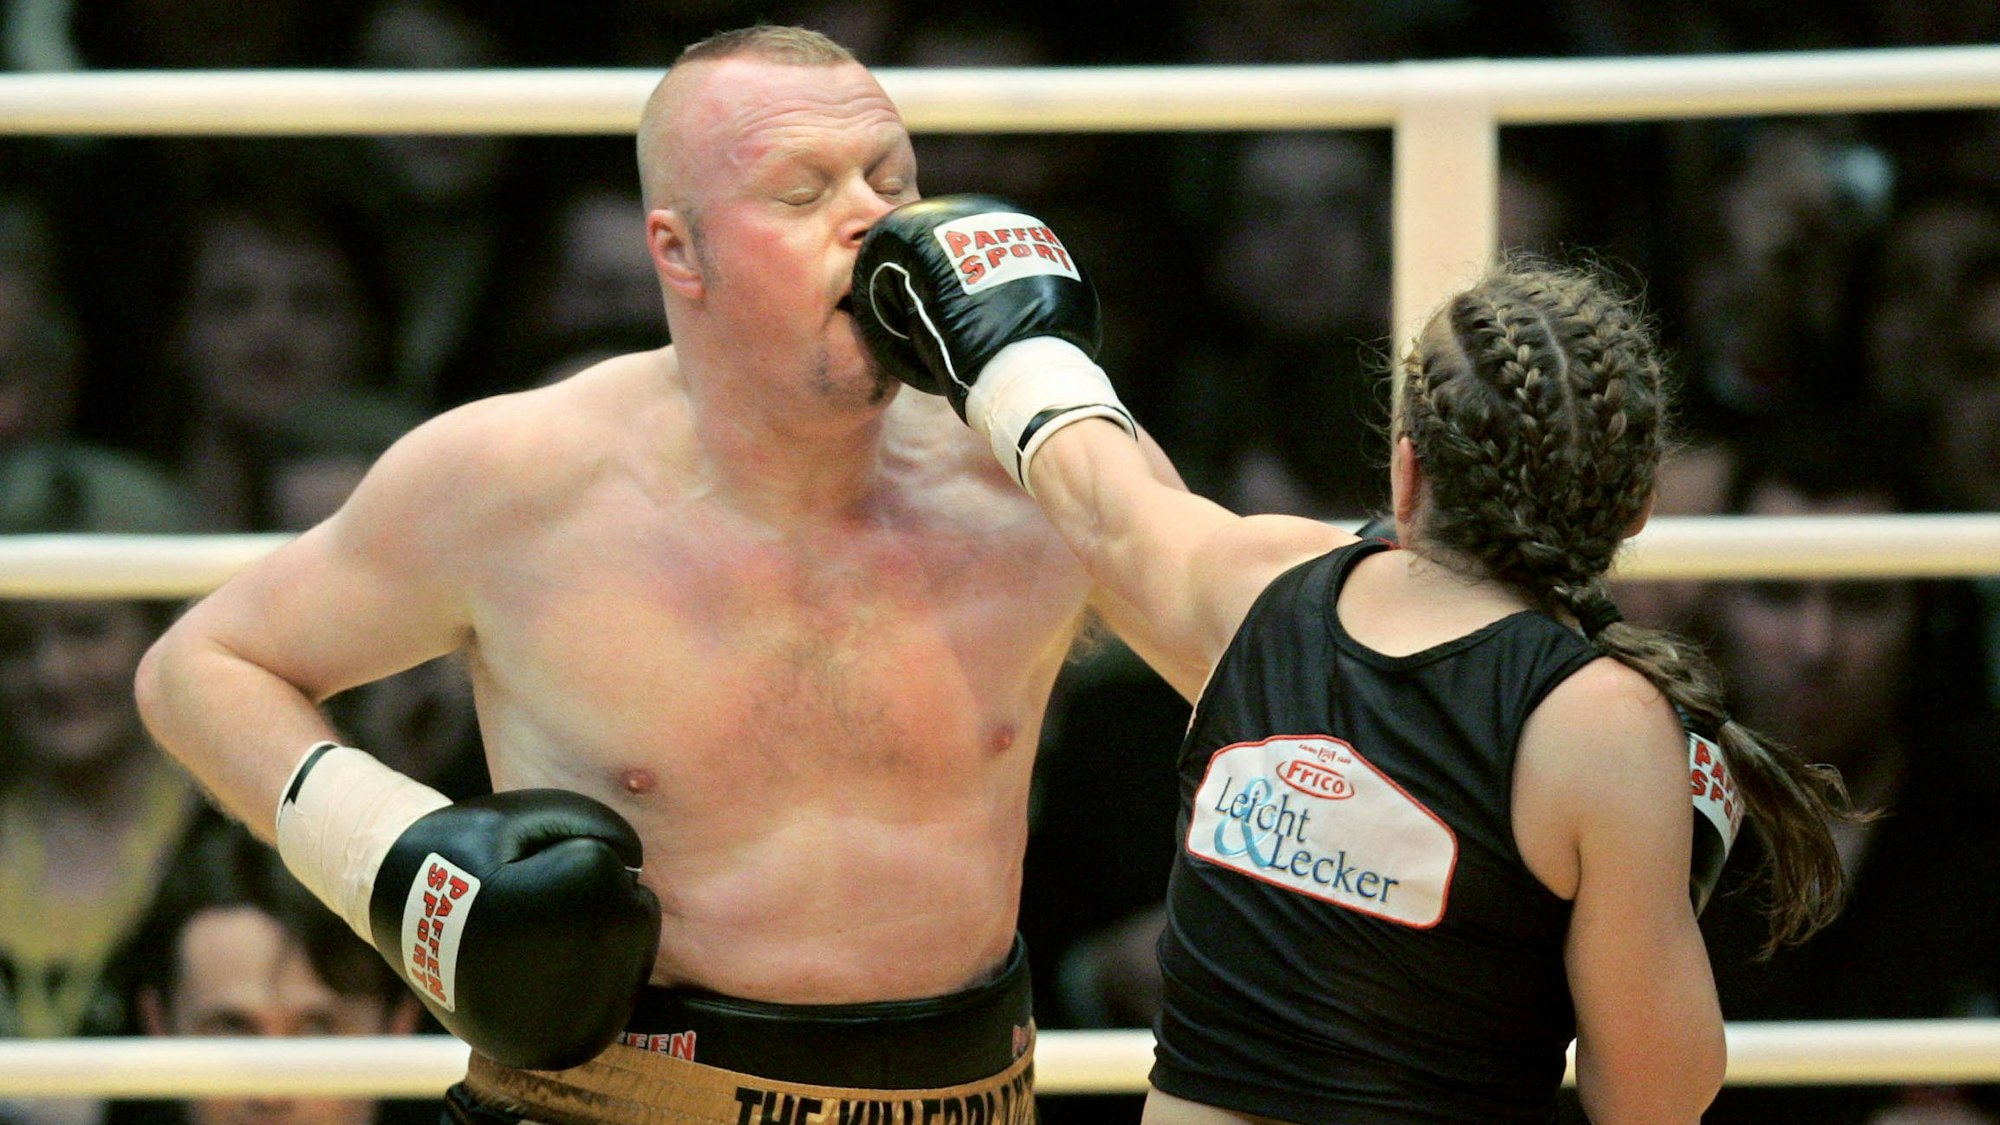 Actionbild aus dem Boxkampf zwischen Stefan Raab und Regina Halmich im Jahr 2007. Im Bild trifft Halmich Raab gerade mit einem Schlag am Kopf.